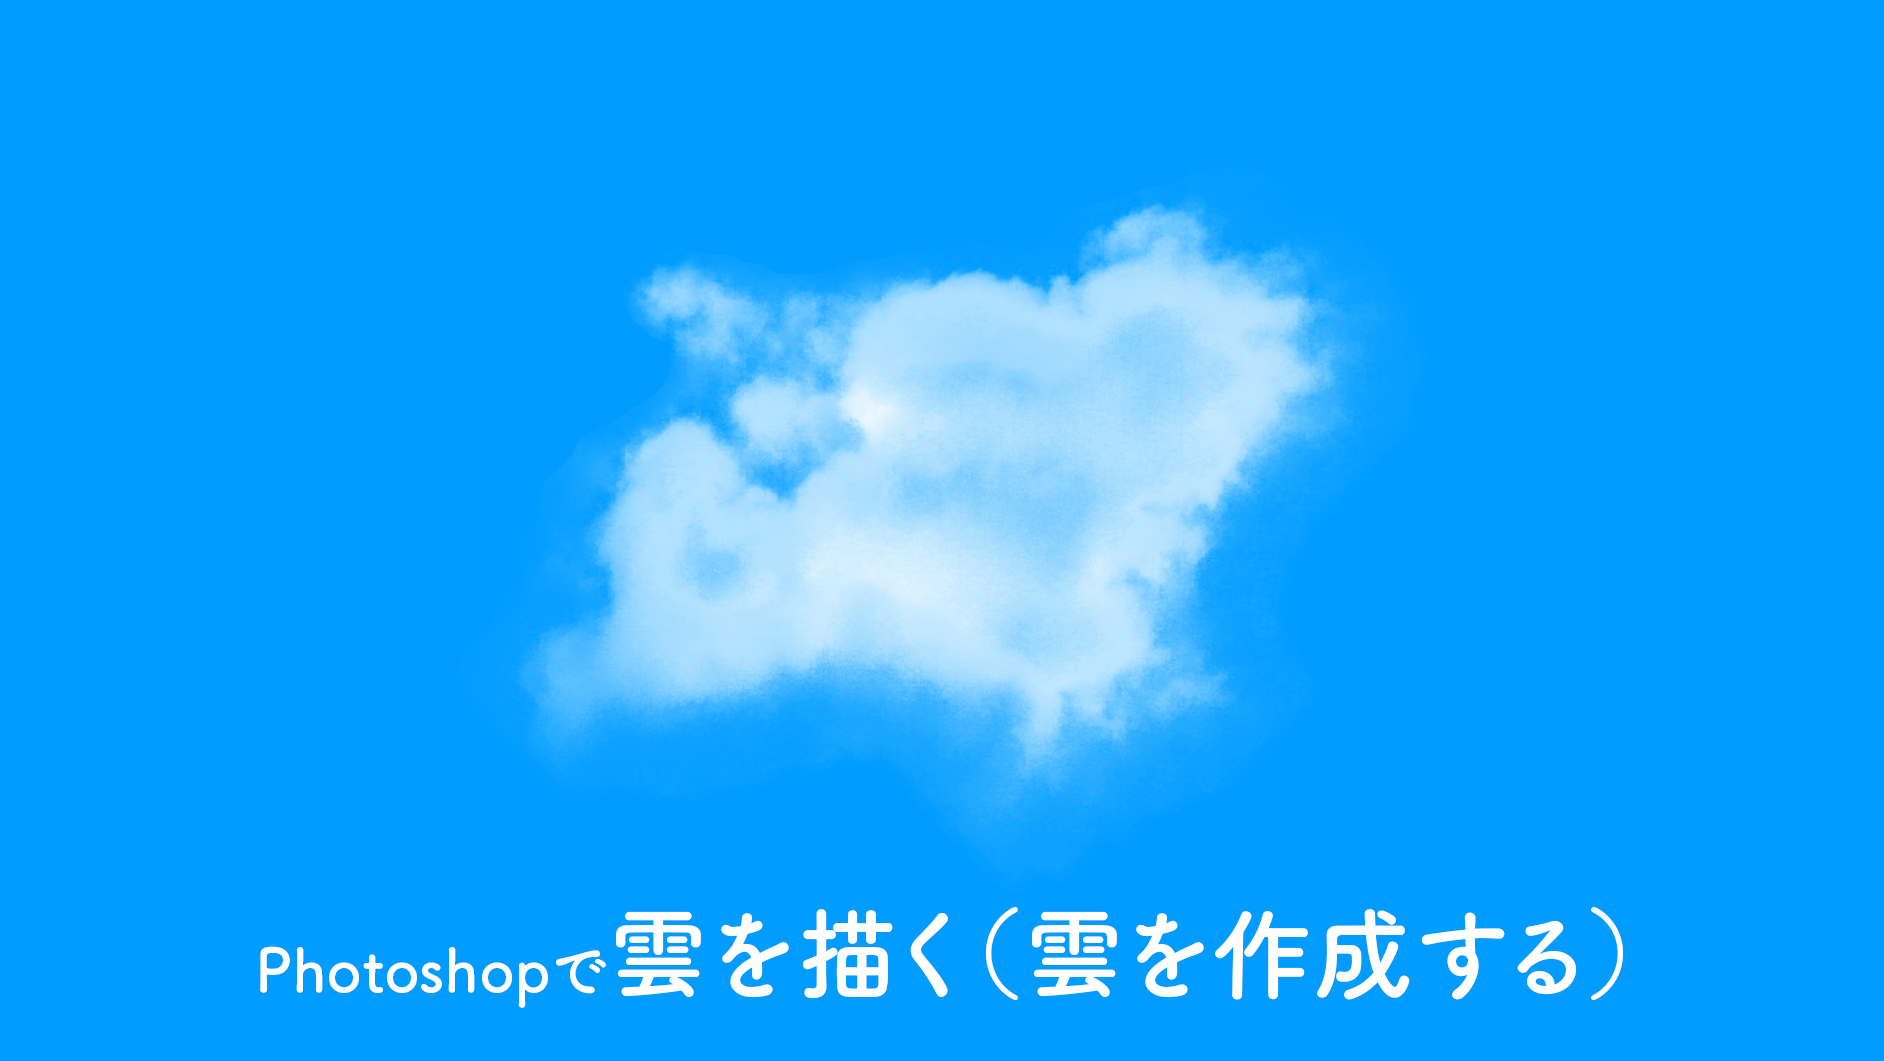 Photoshopで雲 くも を描く 雲を作成する 方法 ブラシ Photoshop逆引き辞典 デザインってオモシロイ Mdn Design Interactive